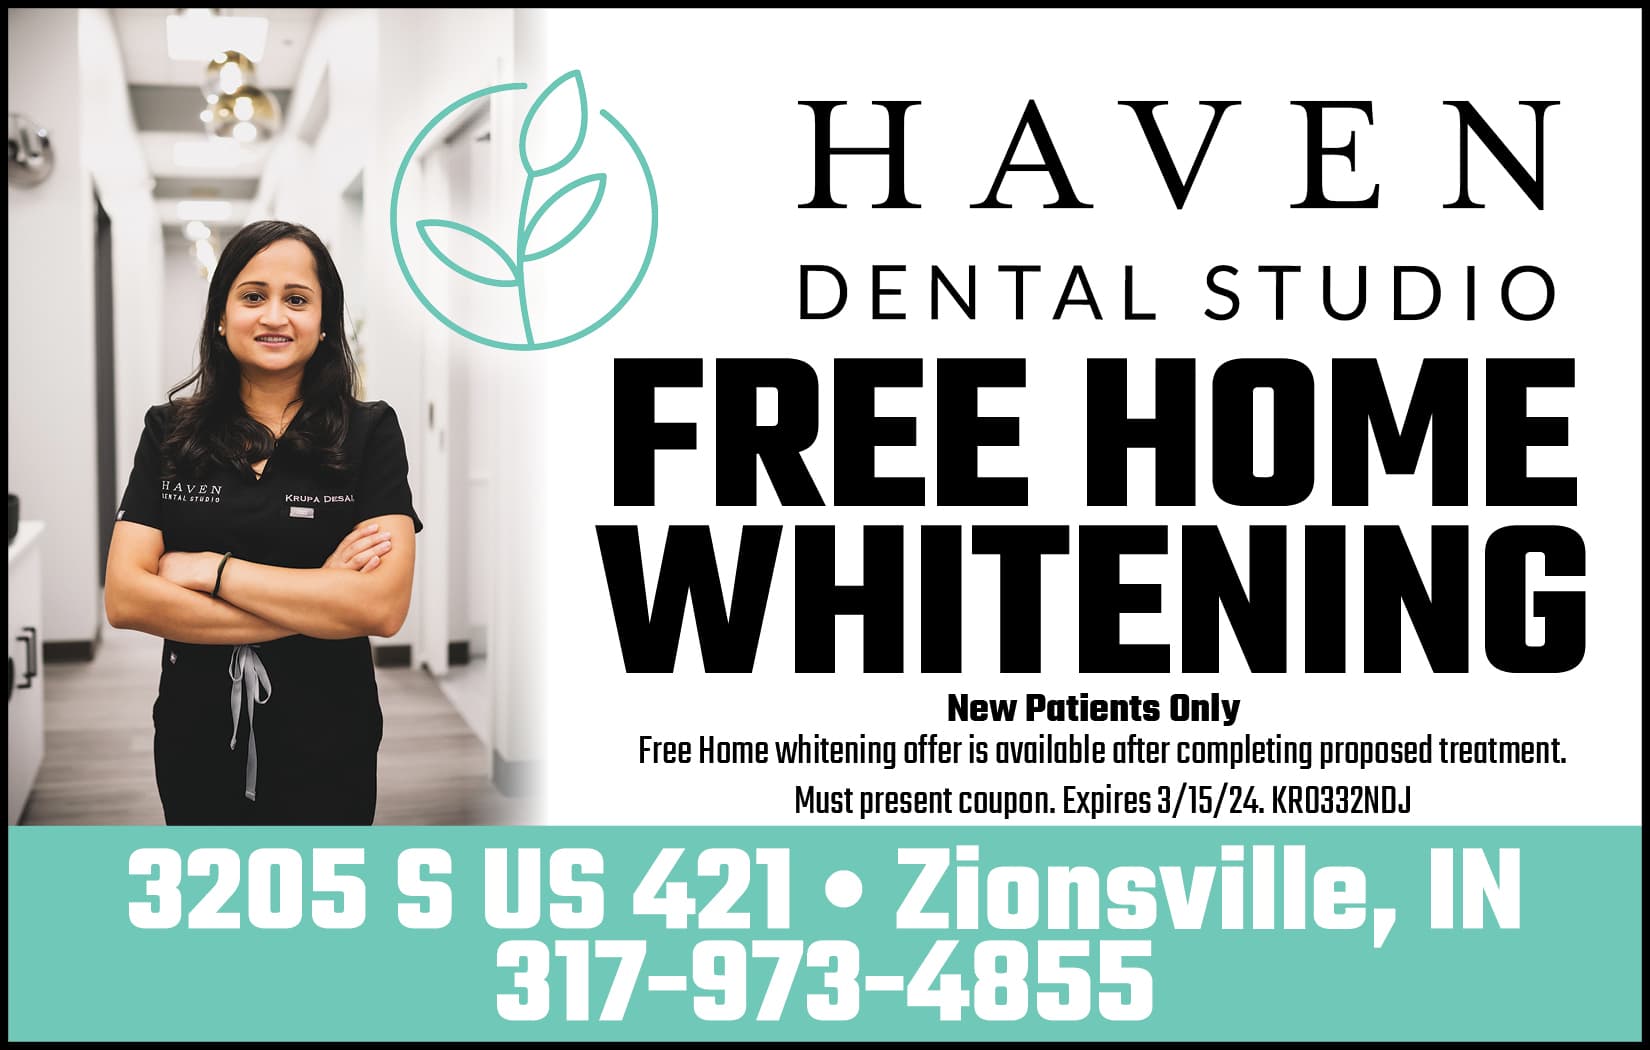 Free Home Whitening - Haven Dental Studio Zionsville, IN 317-973-4855